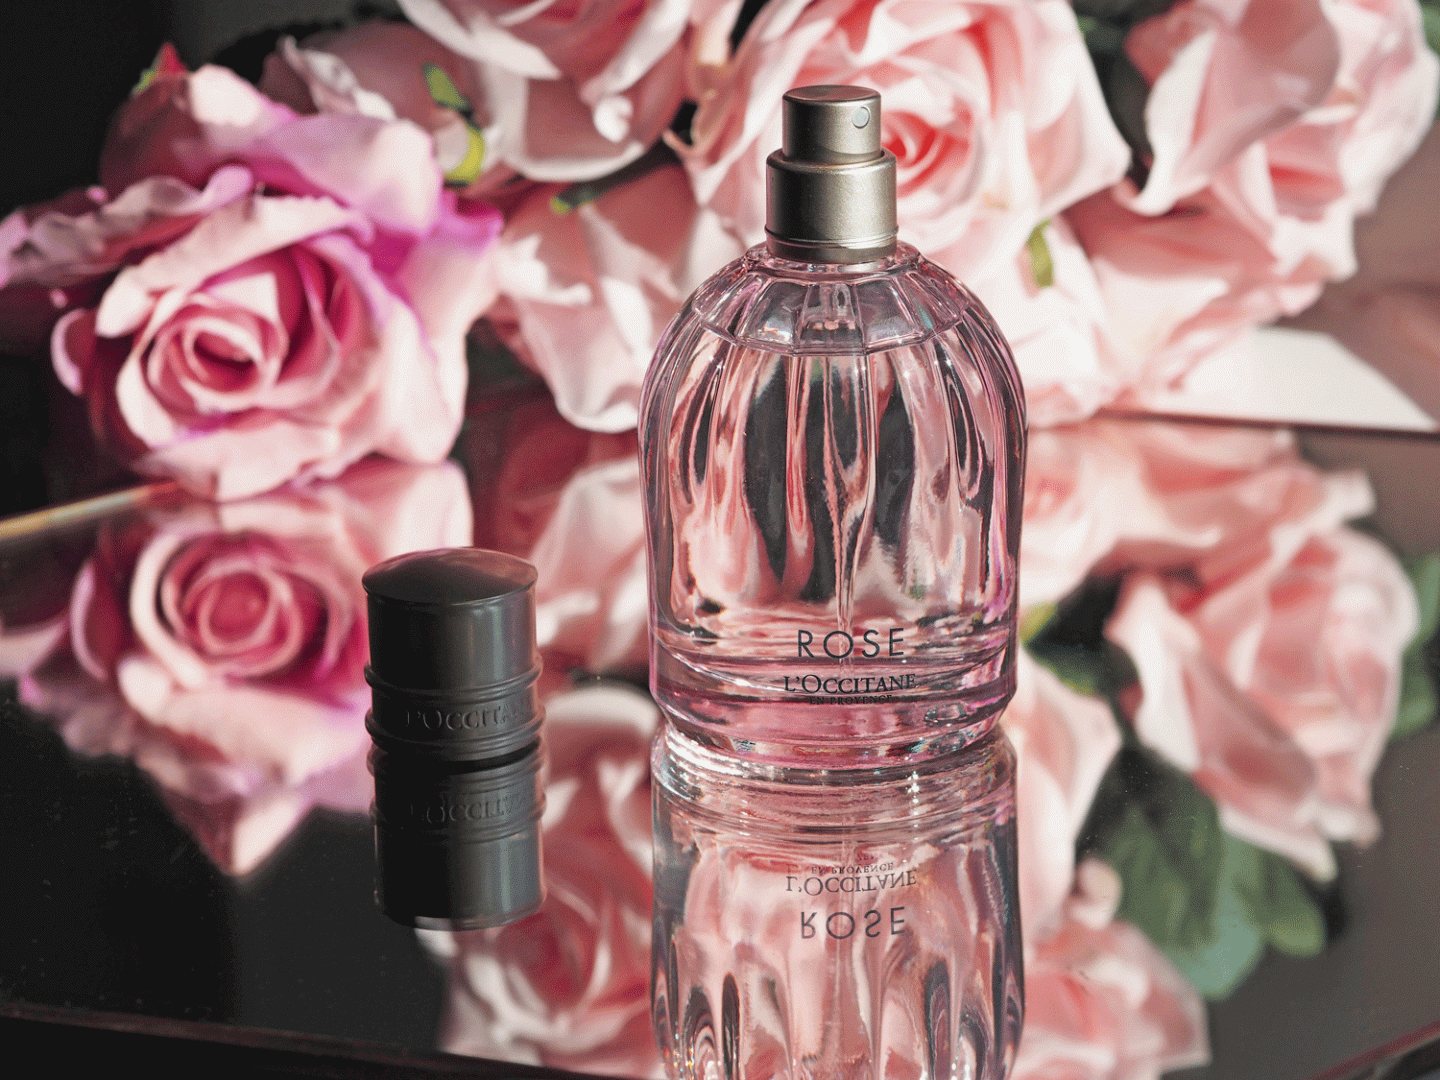 L'Occitane Rose fragrance